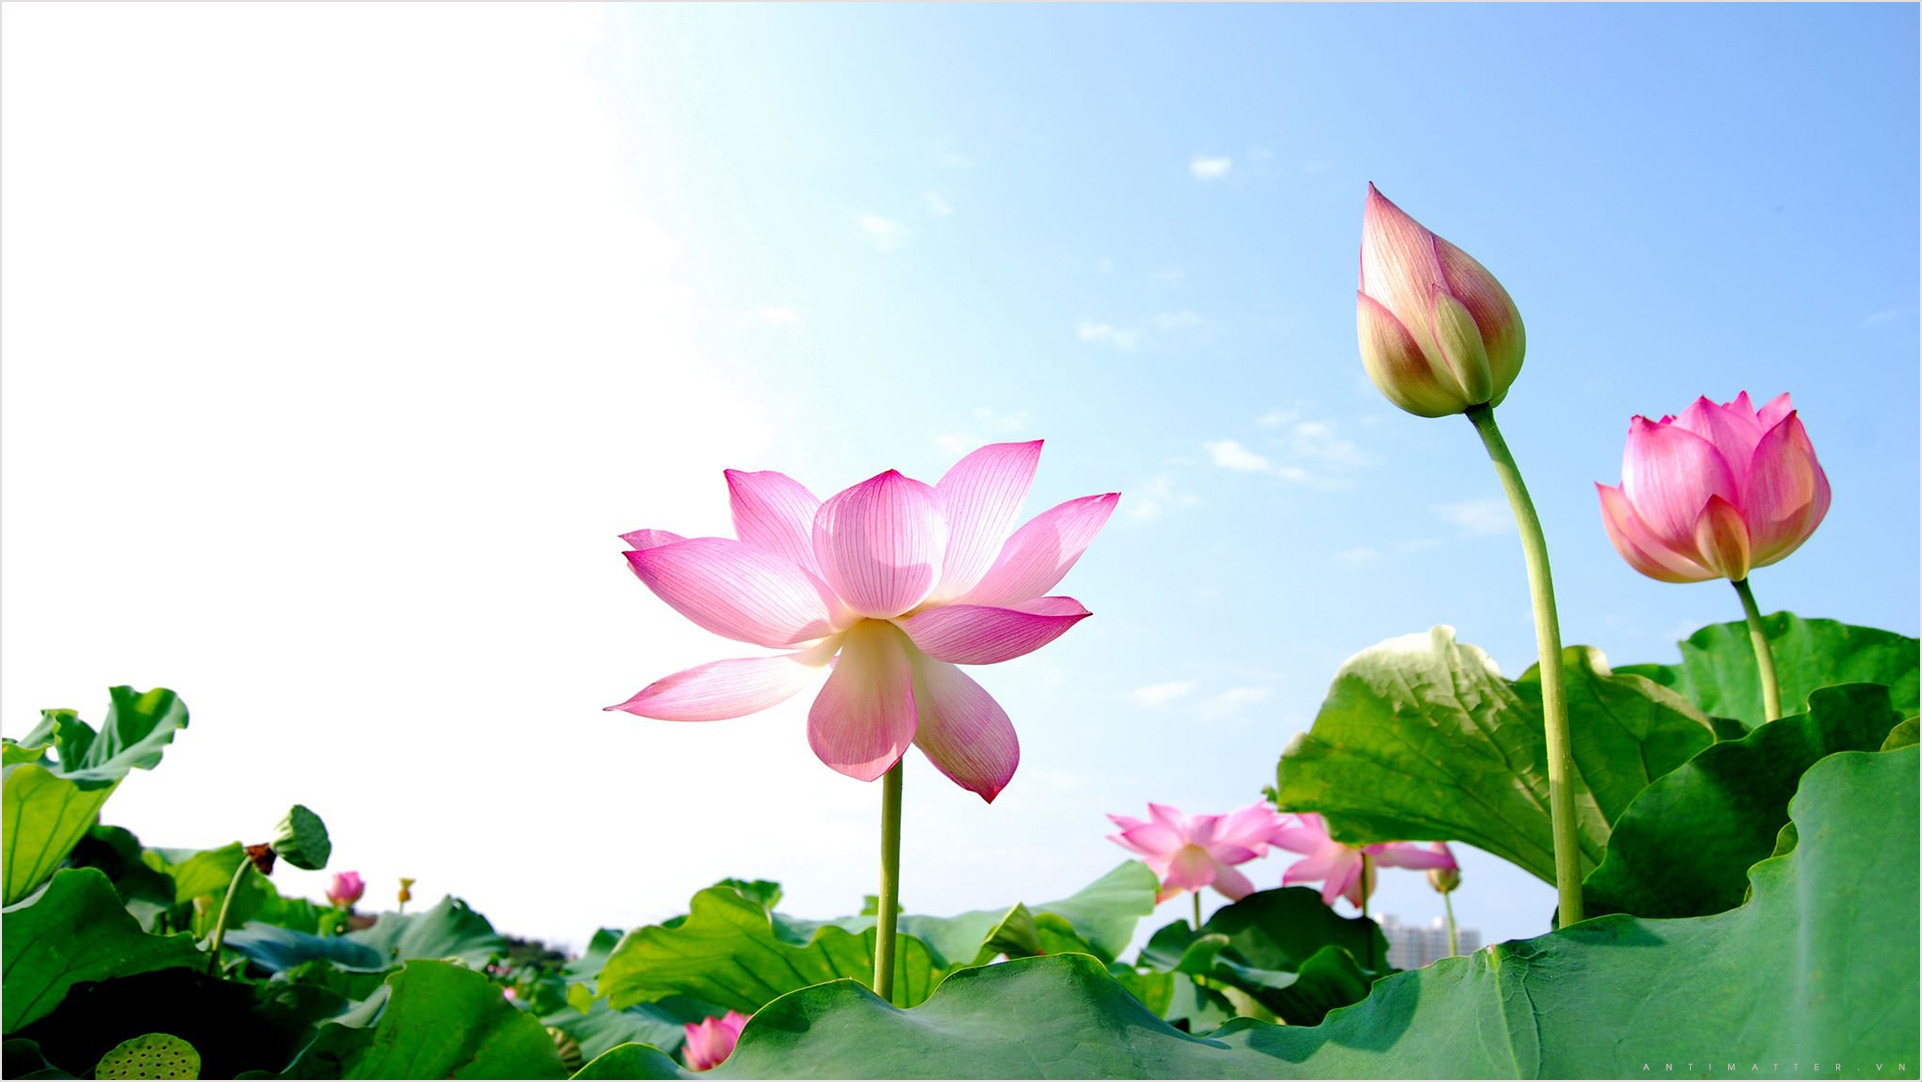 Hình nền hoa sen tinh khôi sẽ đem đến cho bạn sự tươi trẻ và trong sáng như thể bạn đang đứng giữa những cánh hoa sen chan chứa nắng ban mai. Bức ảnh như một lời nhắn nhủ để bạn giữ vững niềm tin và tình yêu cuộc sống.